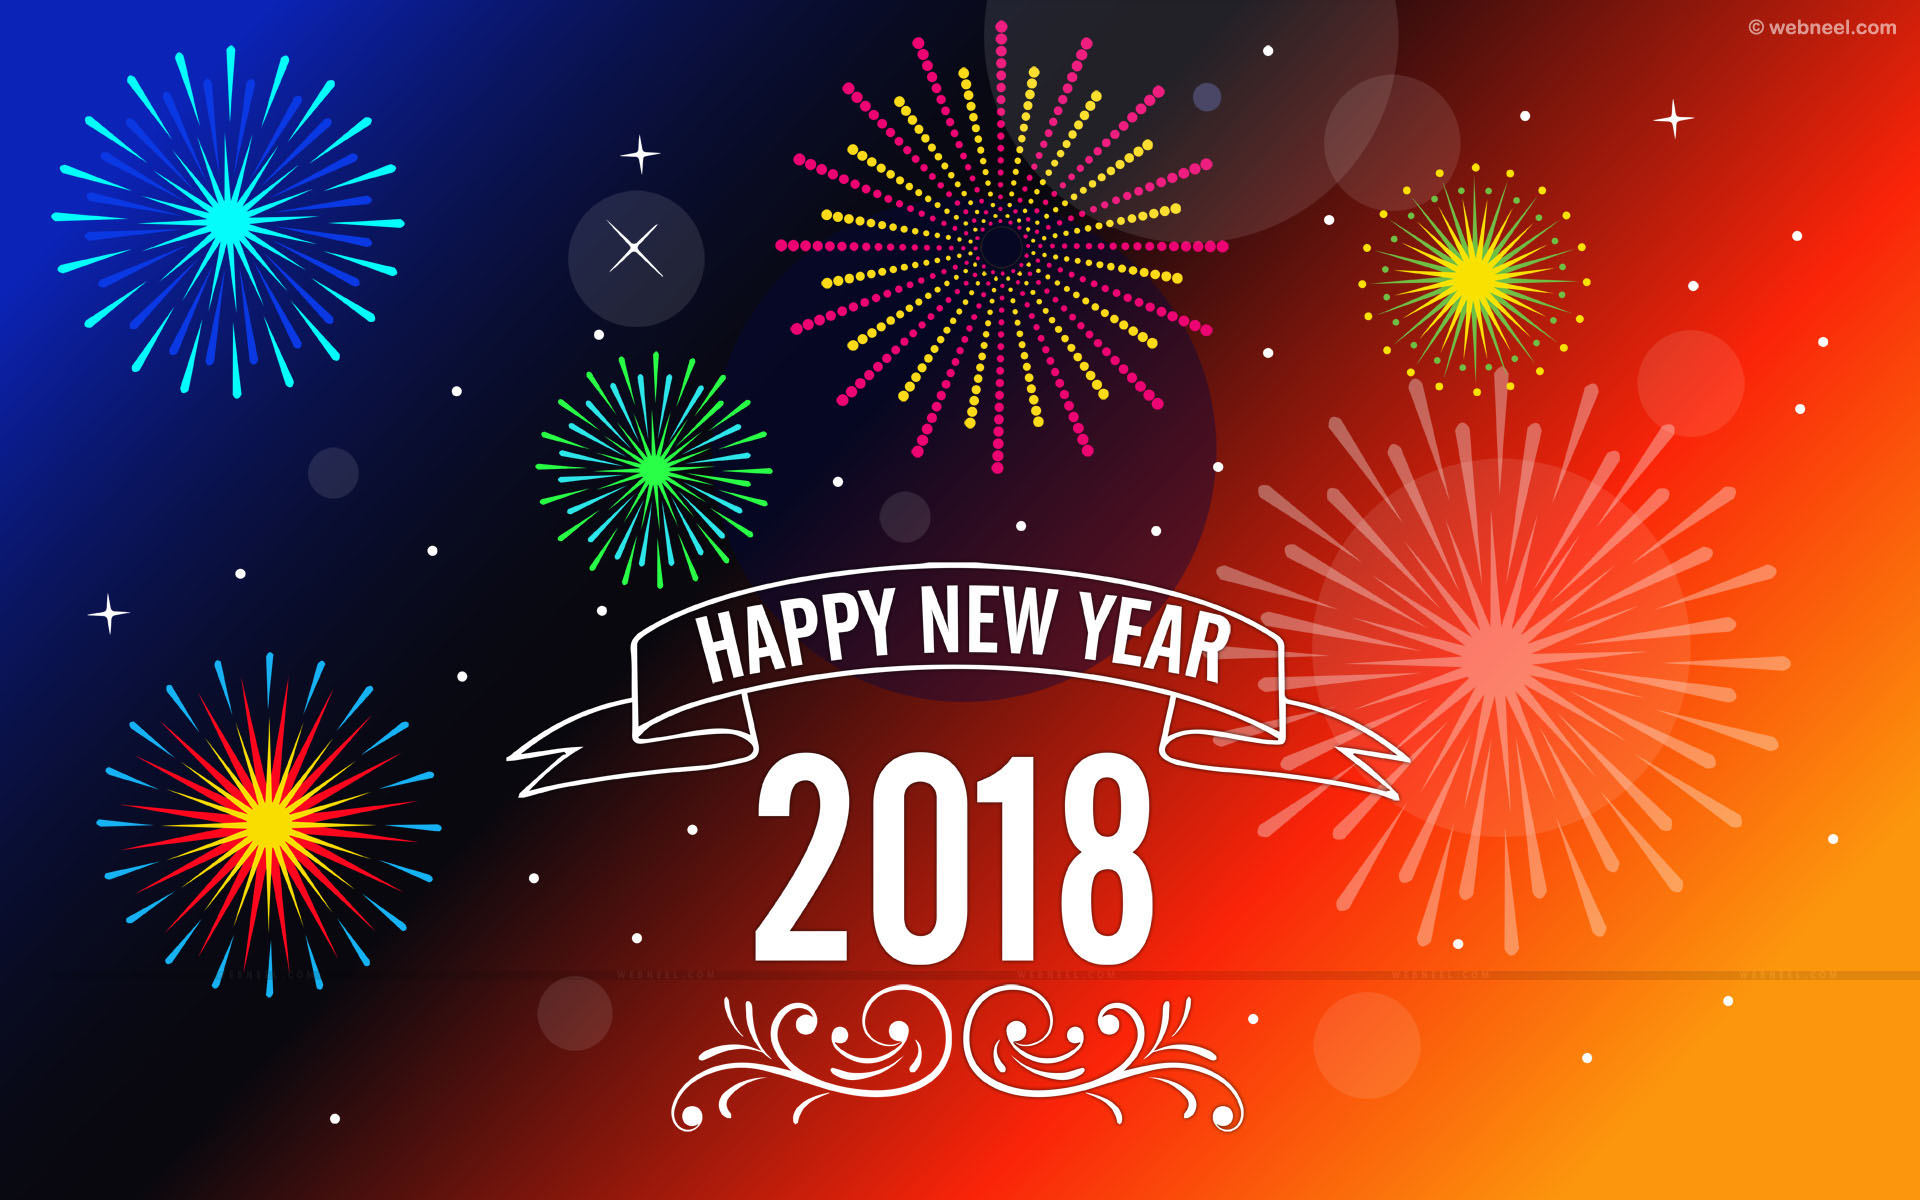 2018 Wallpaper, Happy New Year 2018, Happy New Year Wallpapers, Hd New Years Wallpapers, New Year, Santa Wallpaper